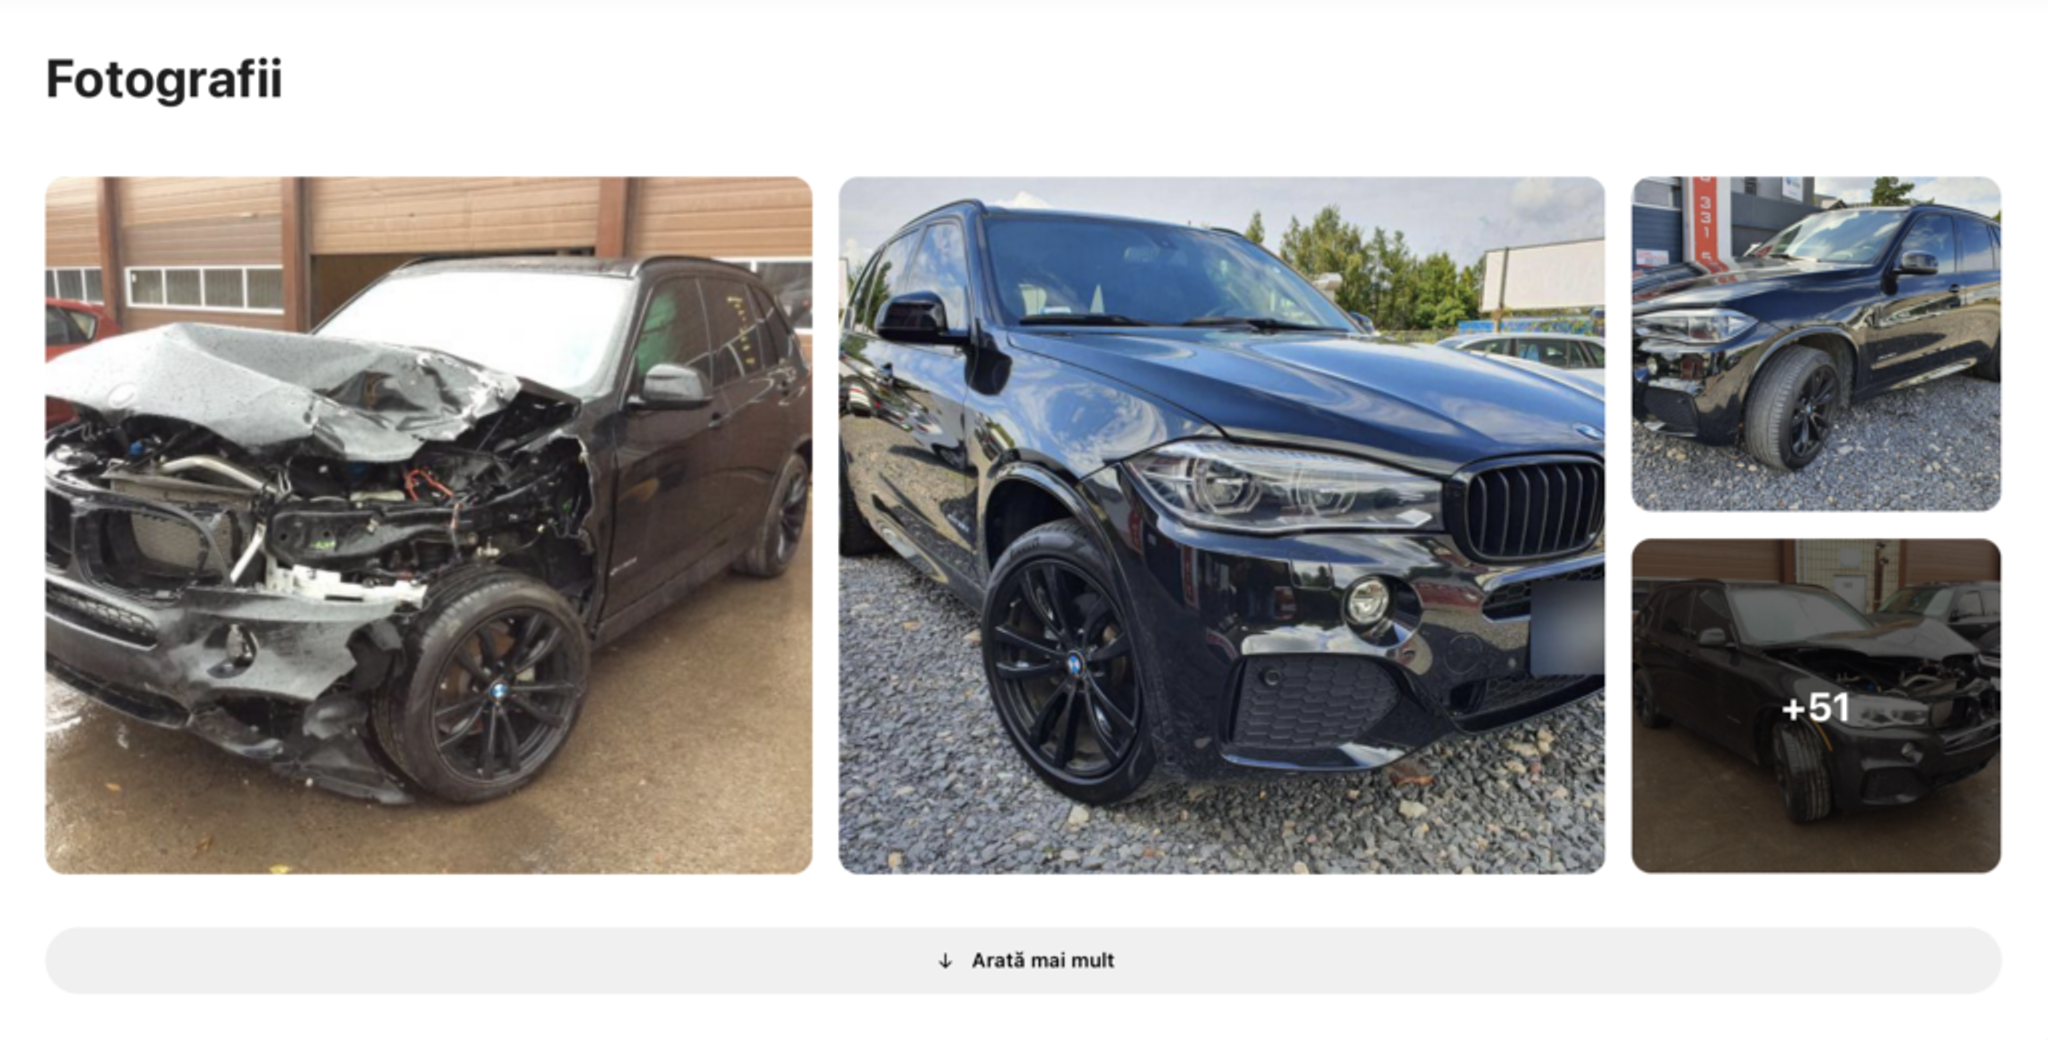 Fotografii bmw după un accident găsit în carVertical, mașină avariată, vehicul distrus, mașină înainte și după reparații severe